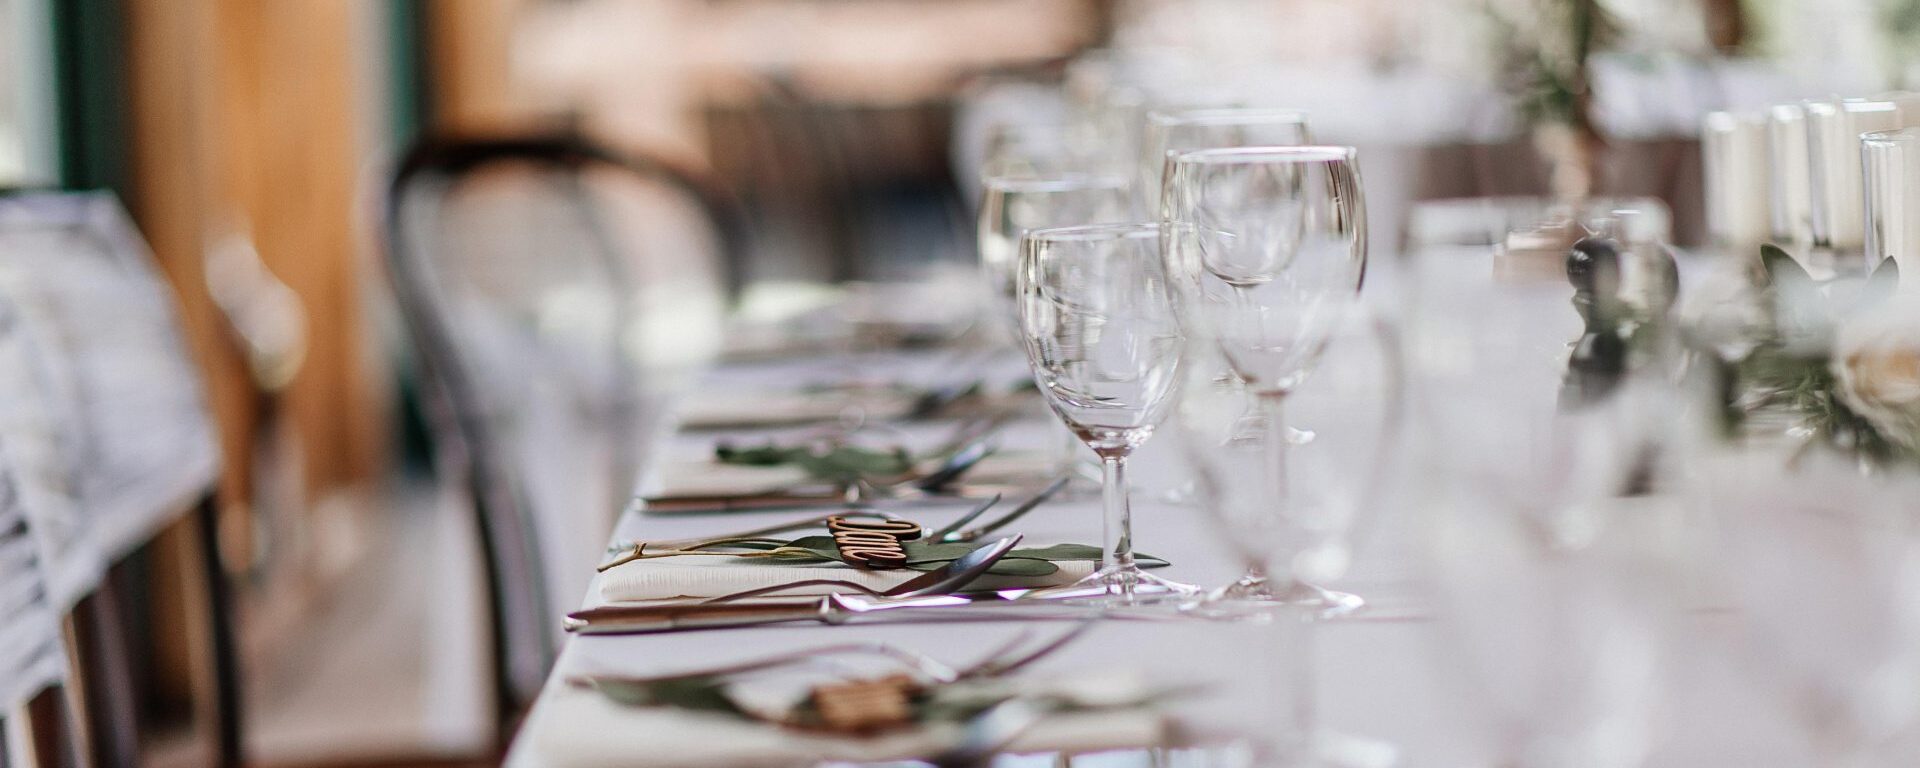 Wedding table pixabay